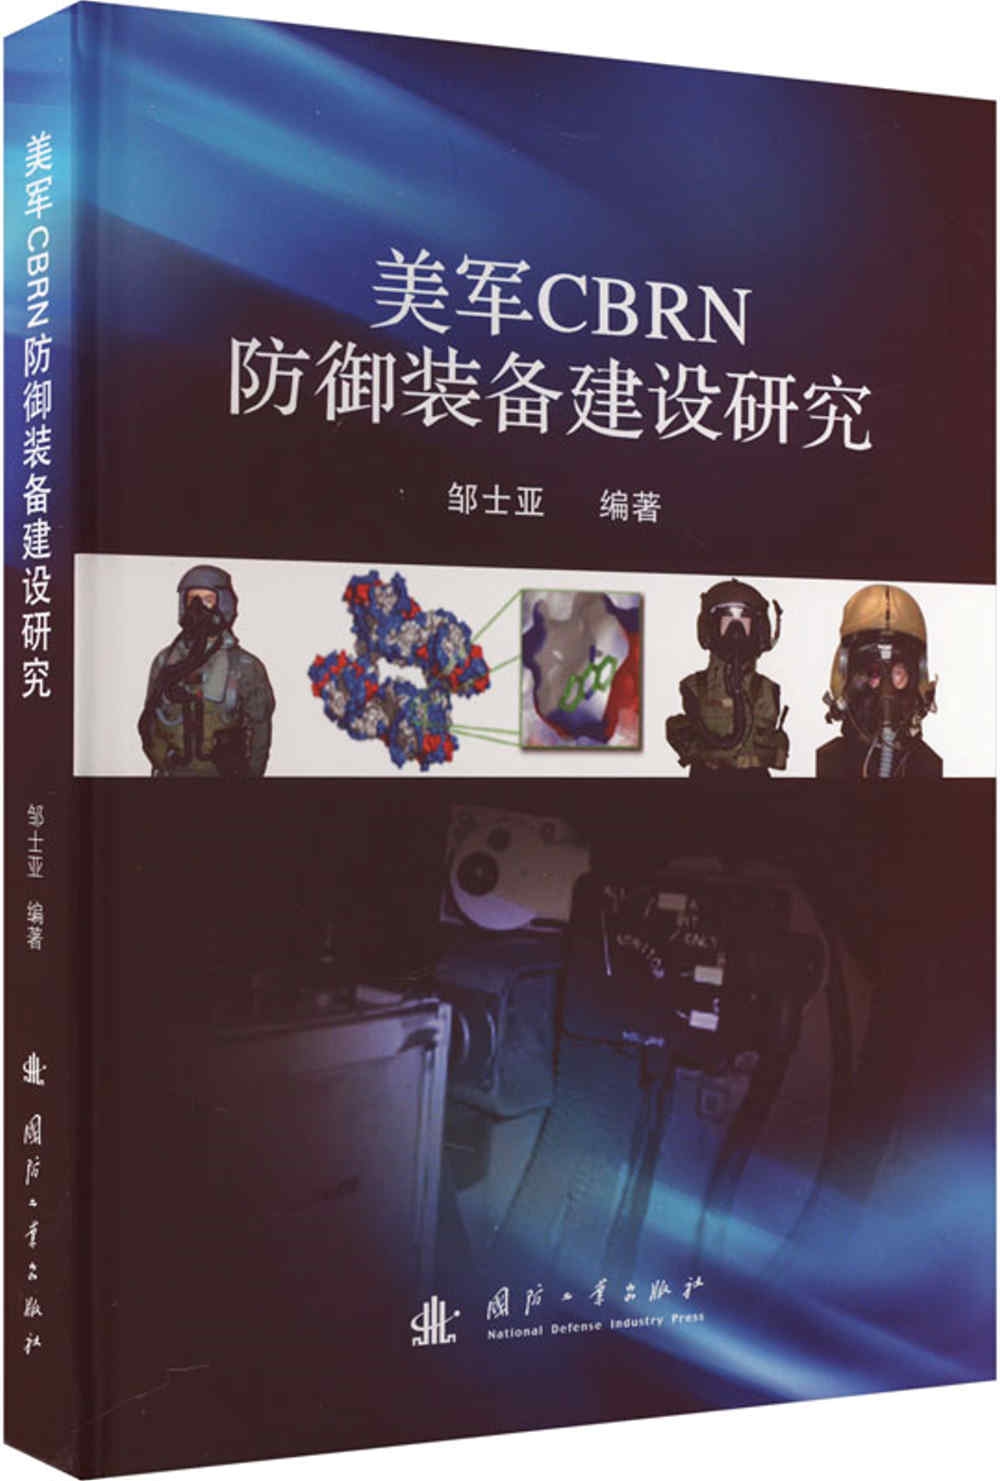 美軍CBRN防禦裝備建設研究